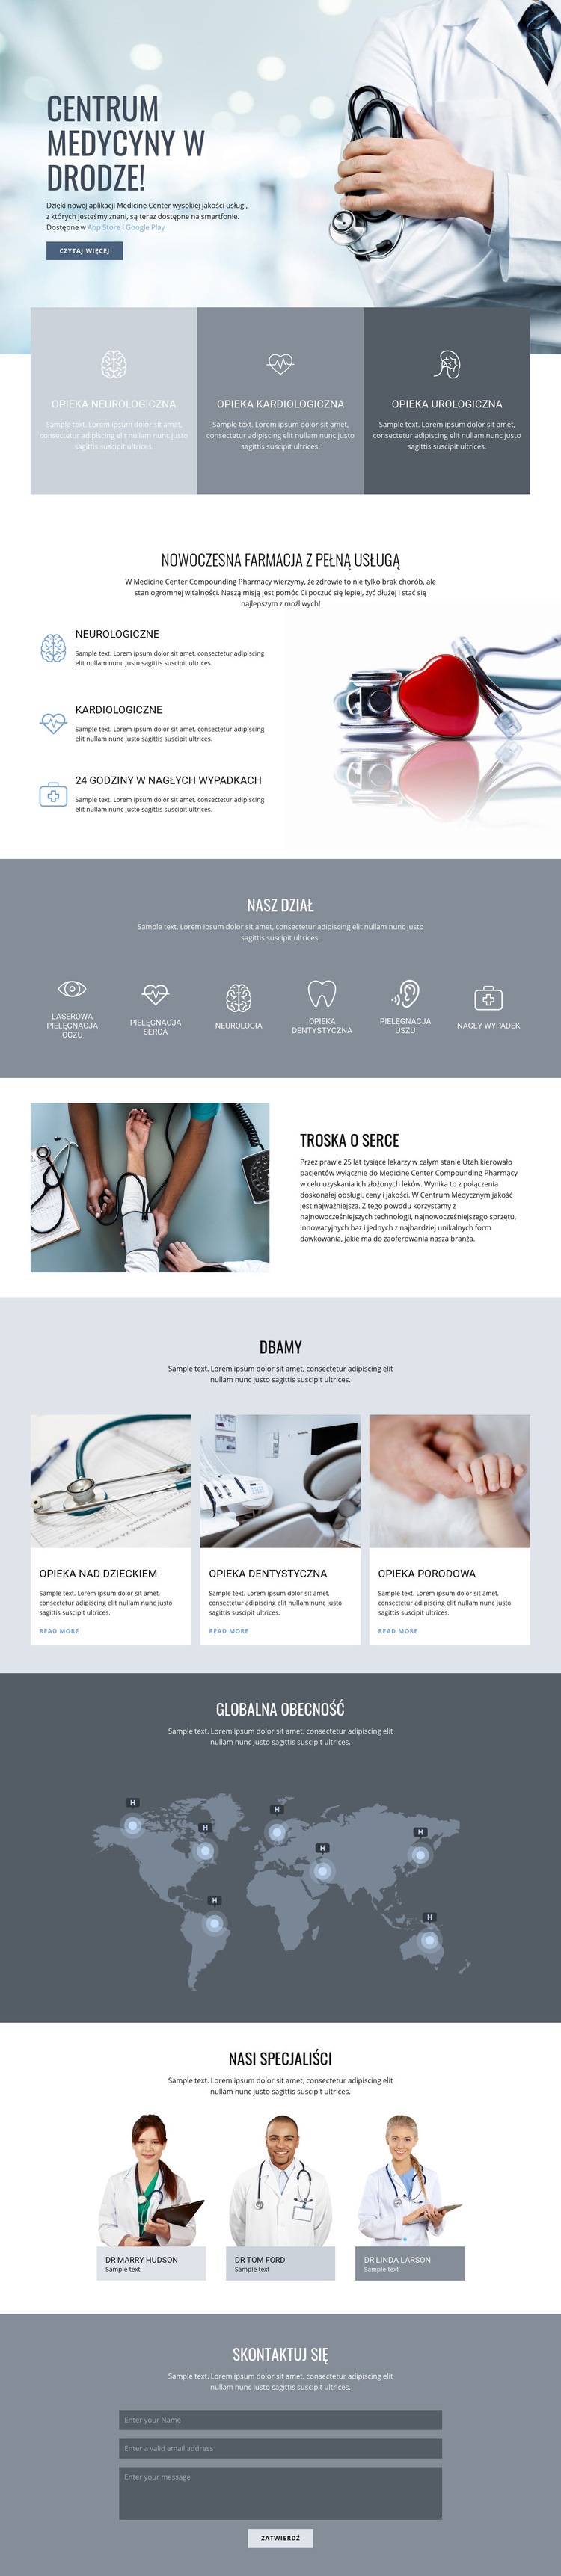 Centrum medycyny jakości Projekt strony internetowej